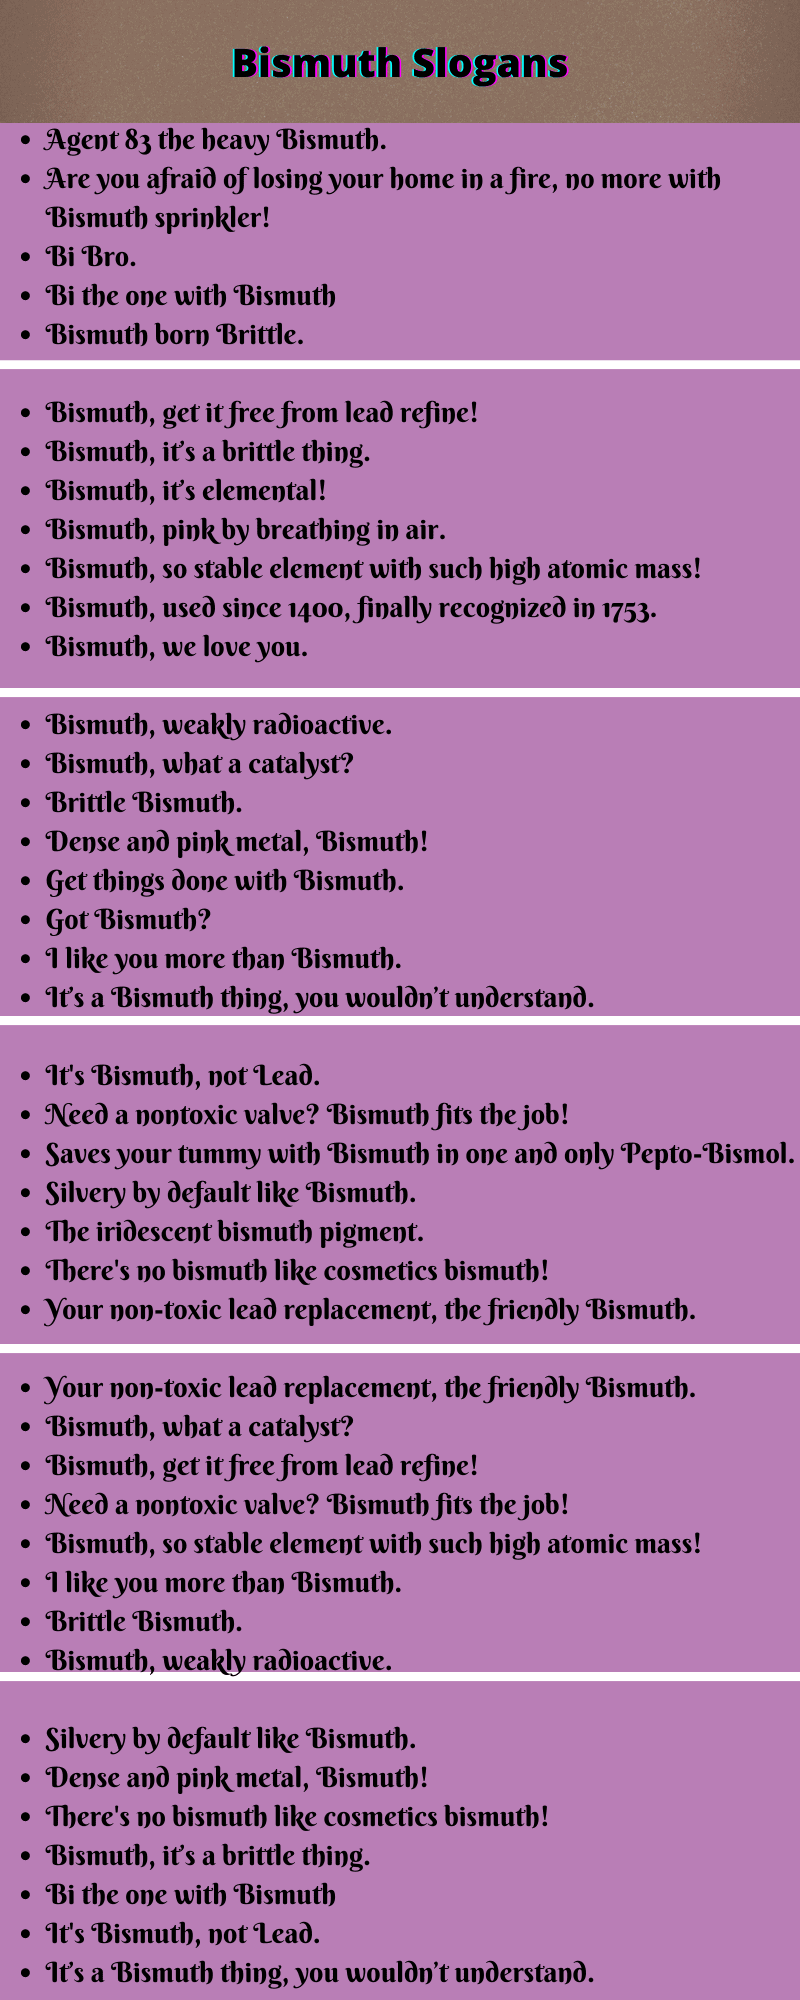 Bismuth Slogans 